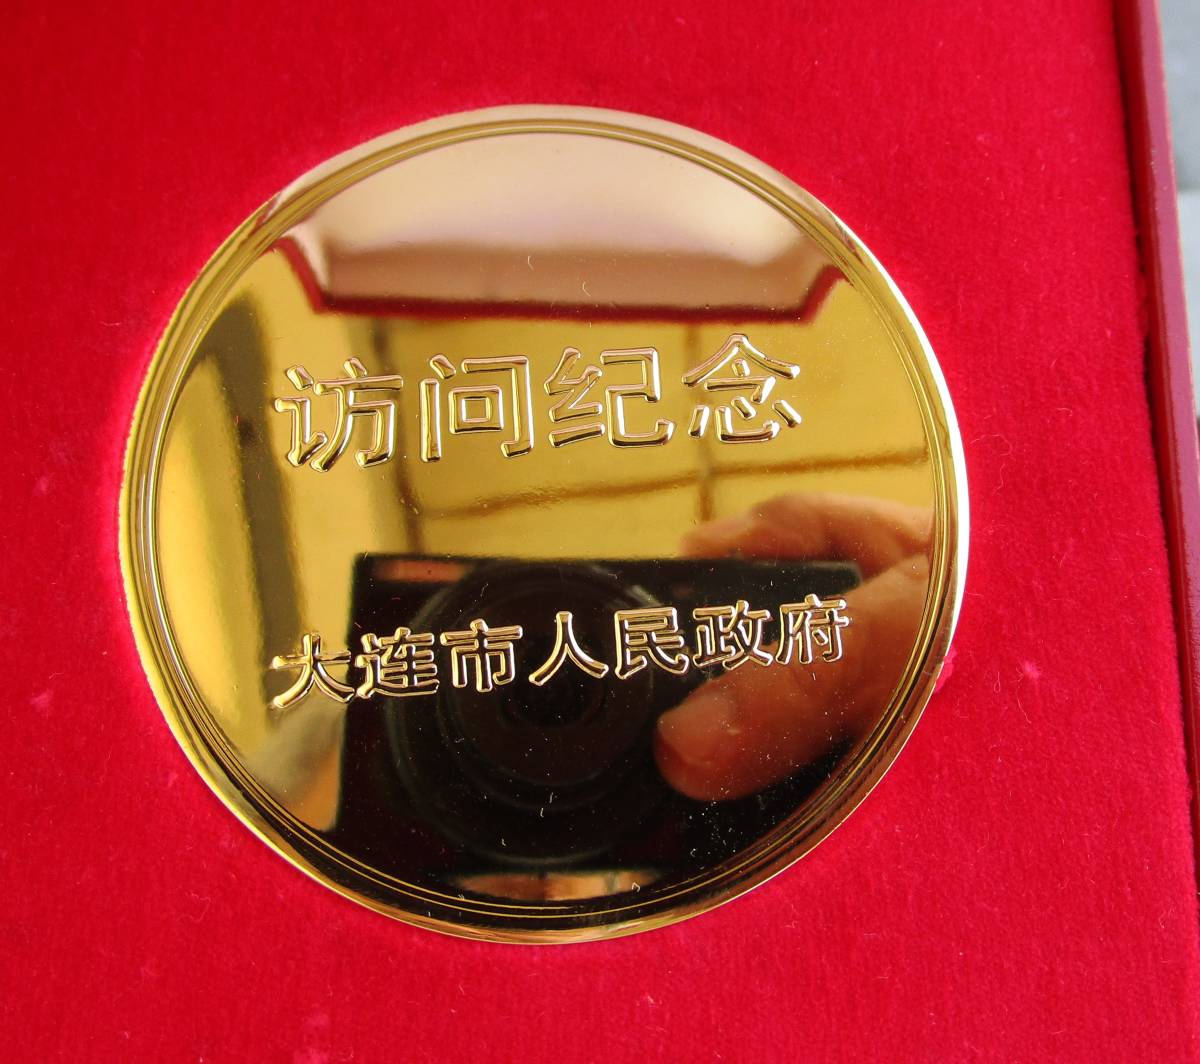 中国 記念メダル 金色大型メダル 程度良し 箱入り わかる方への画像2